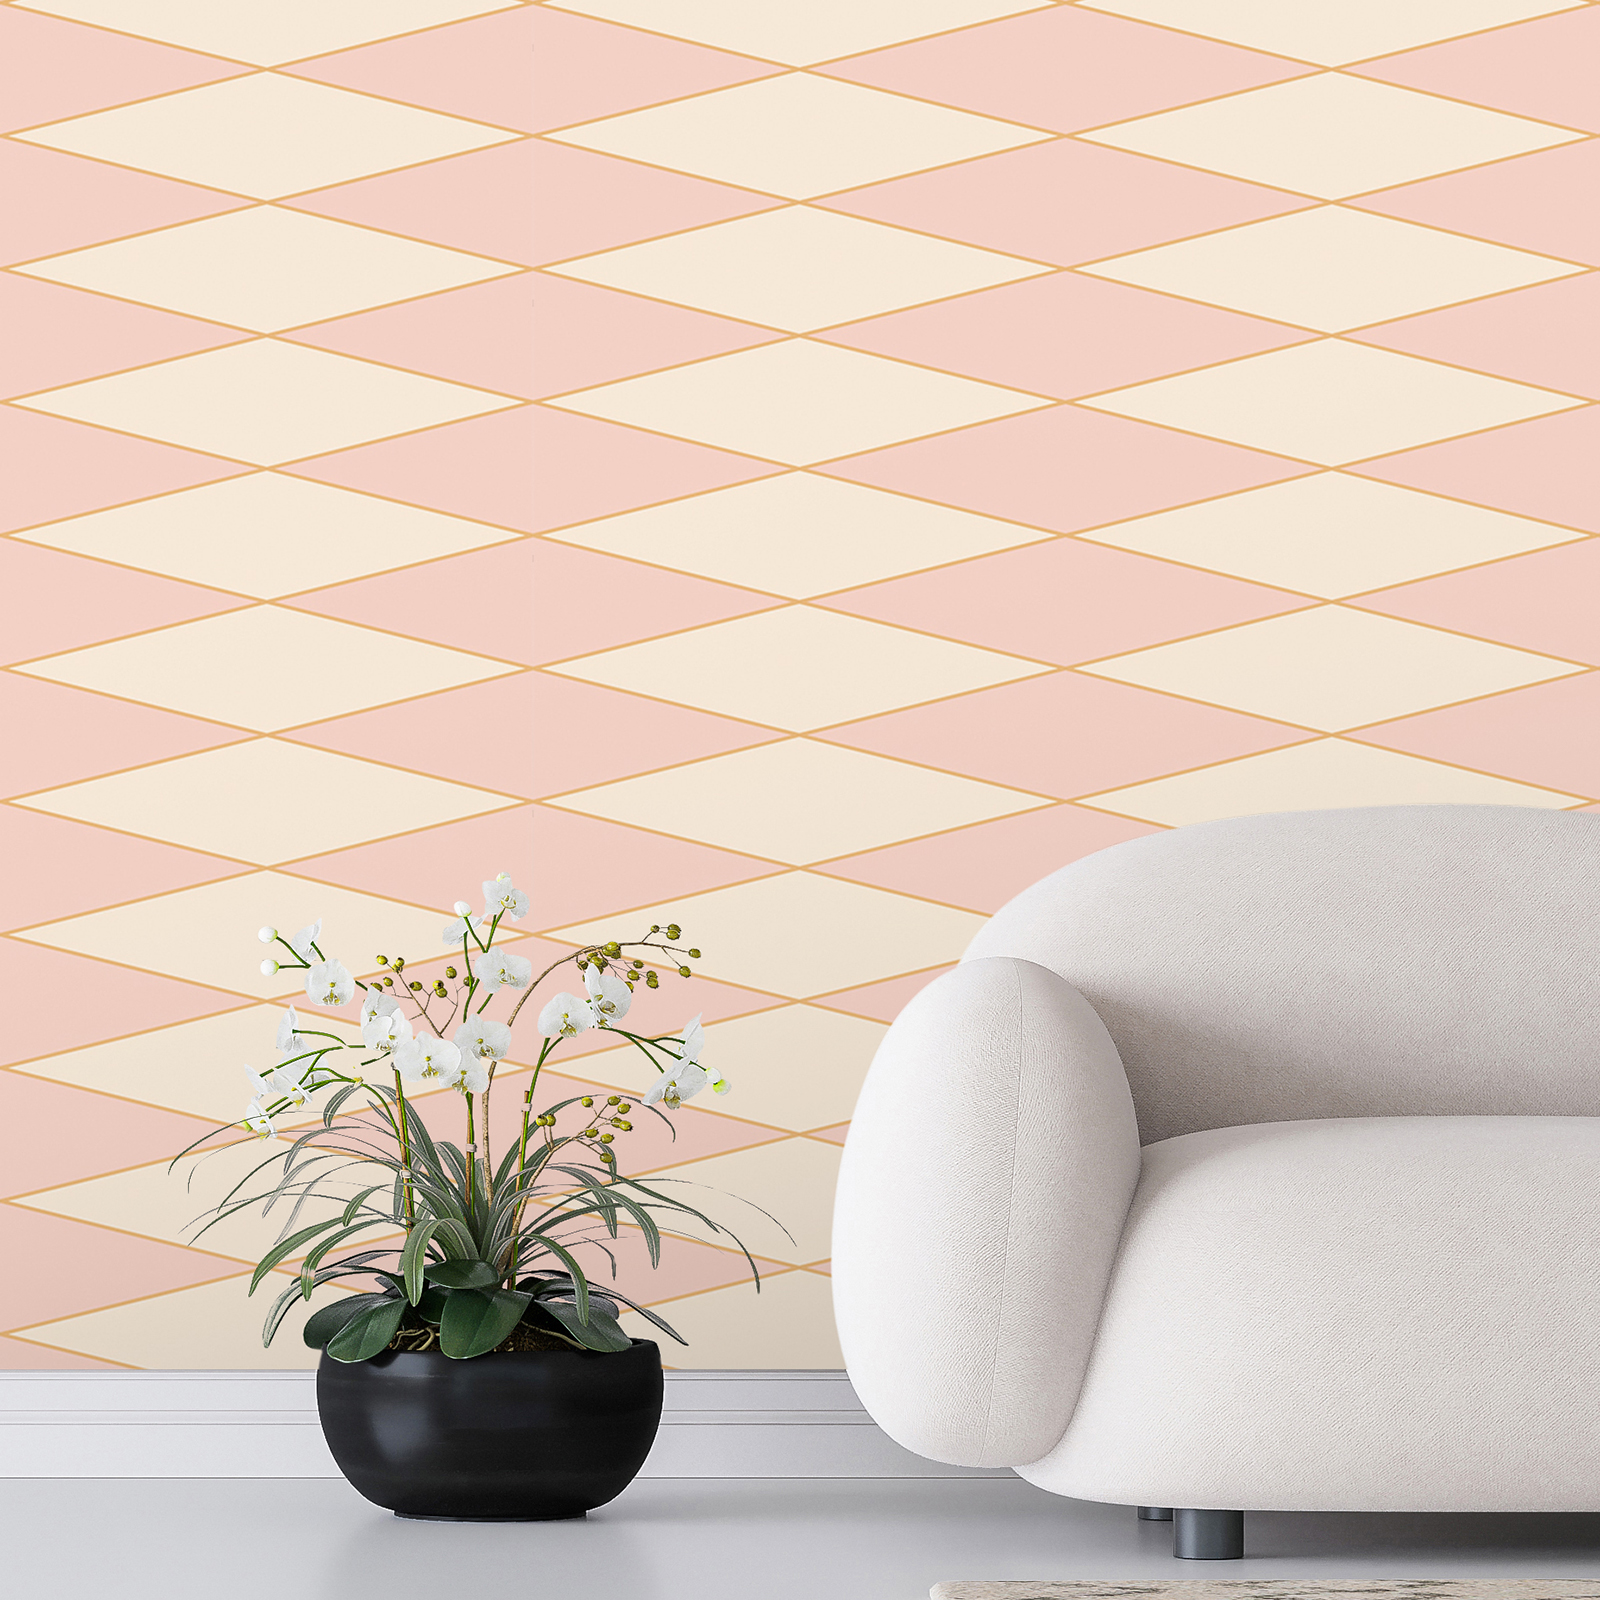 Retro 70s style diamond mural - pink, cream, orange | structure non-woven
